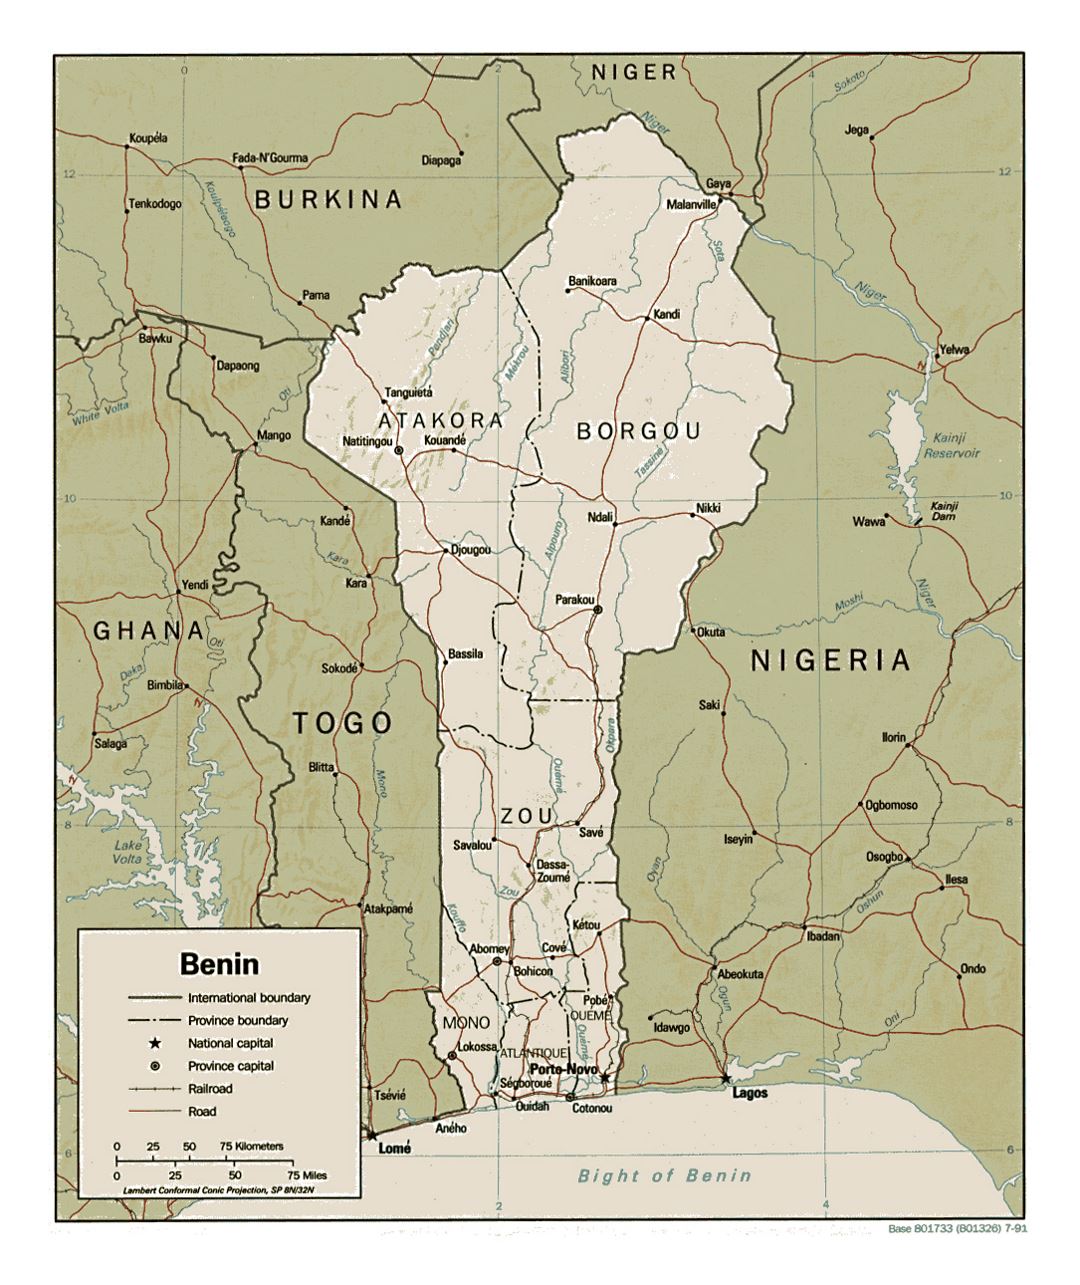 Detallado mapa político y administrativo de Benin con relieve, carreteras, ferrocarriles y principales ciudades - 1991